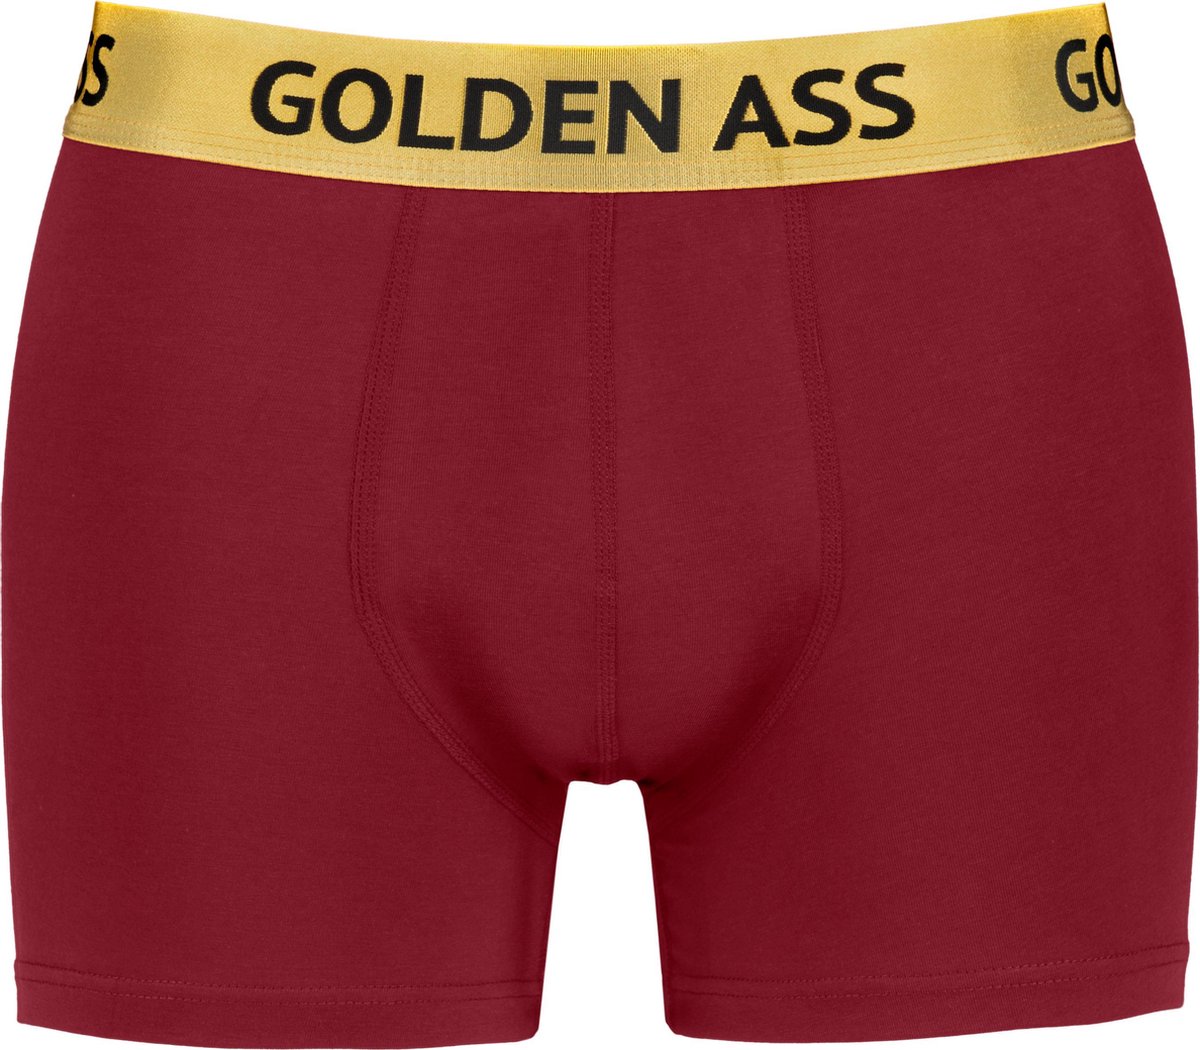 Golden Ass - Heren boxershort rood S